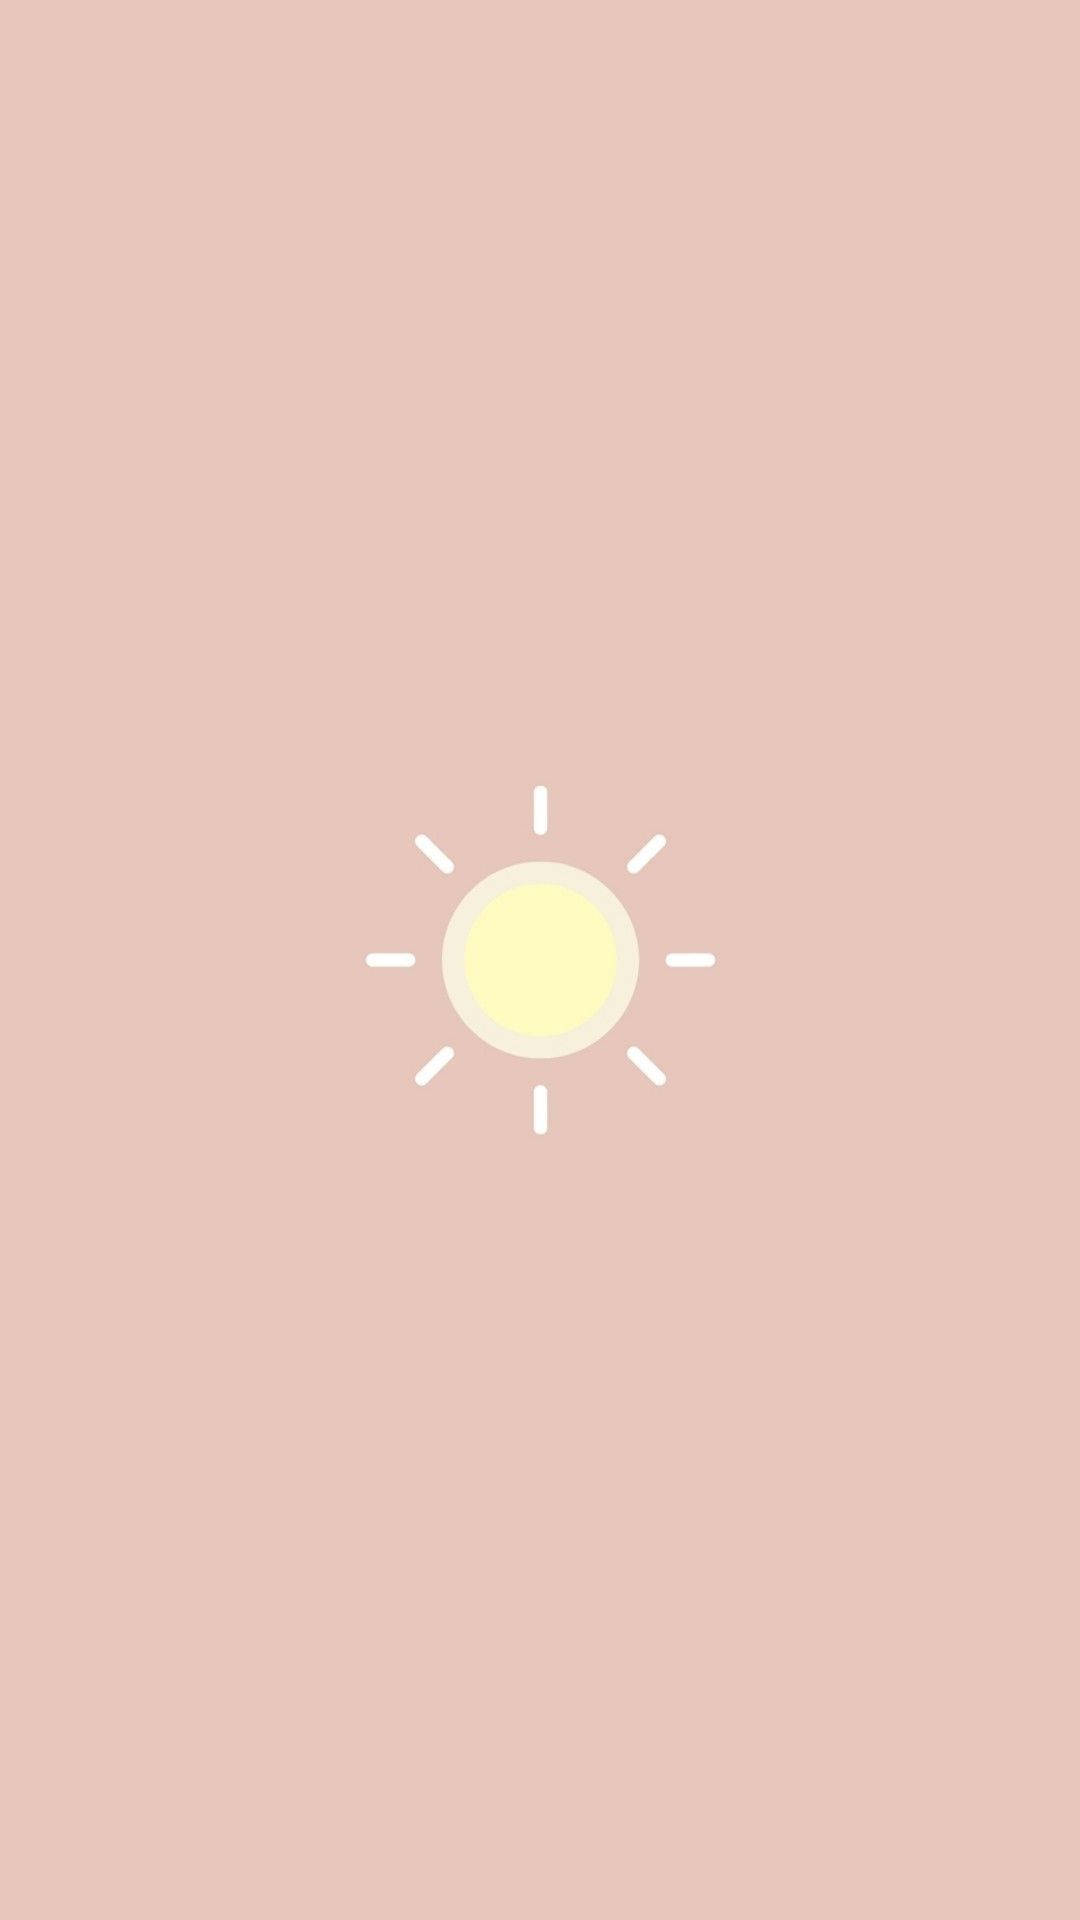 Cute Simple Sun Background